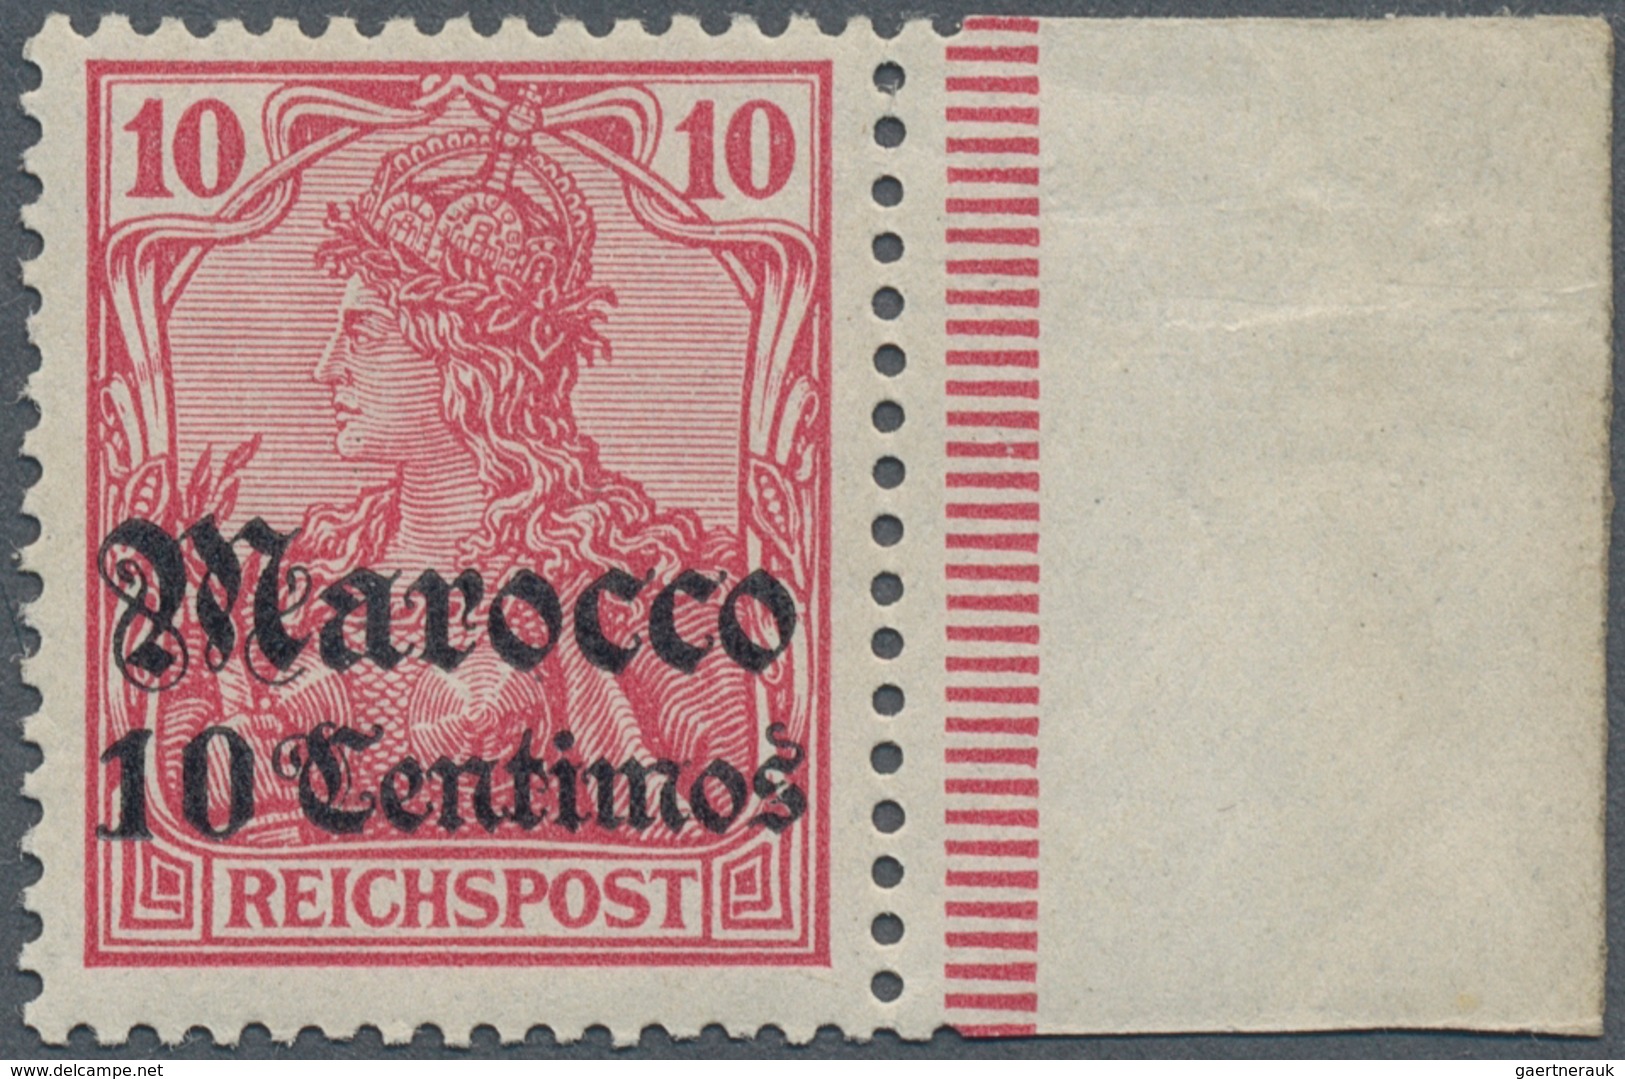 Deutsche Post In Marokko: 1905, Germania 10 Pf. "REICHSPOST" Als PROBEDRUCK Mit Gotischem Aufdruck " - Marocco (uffici)